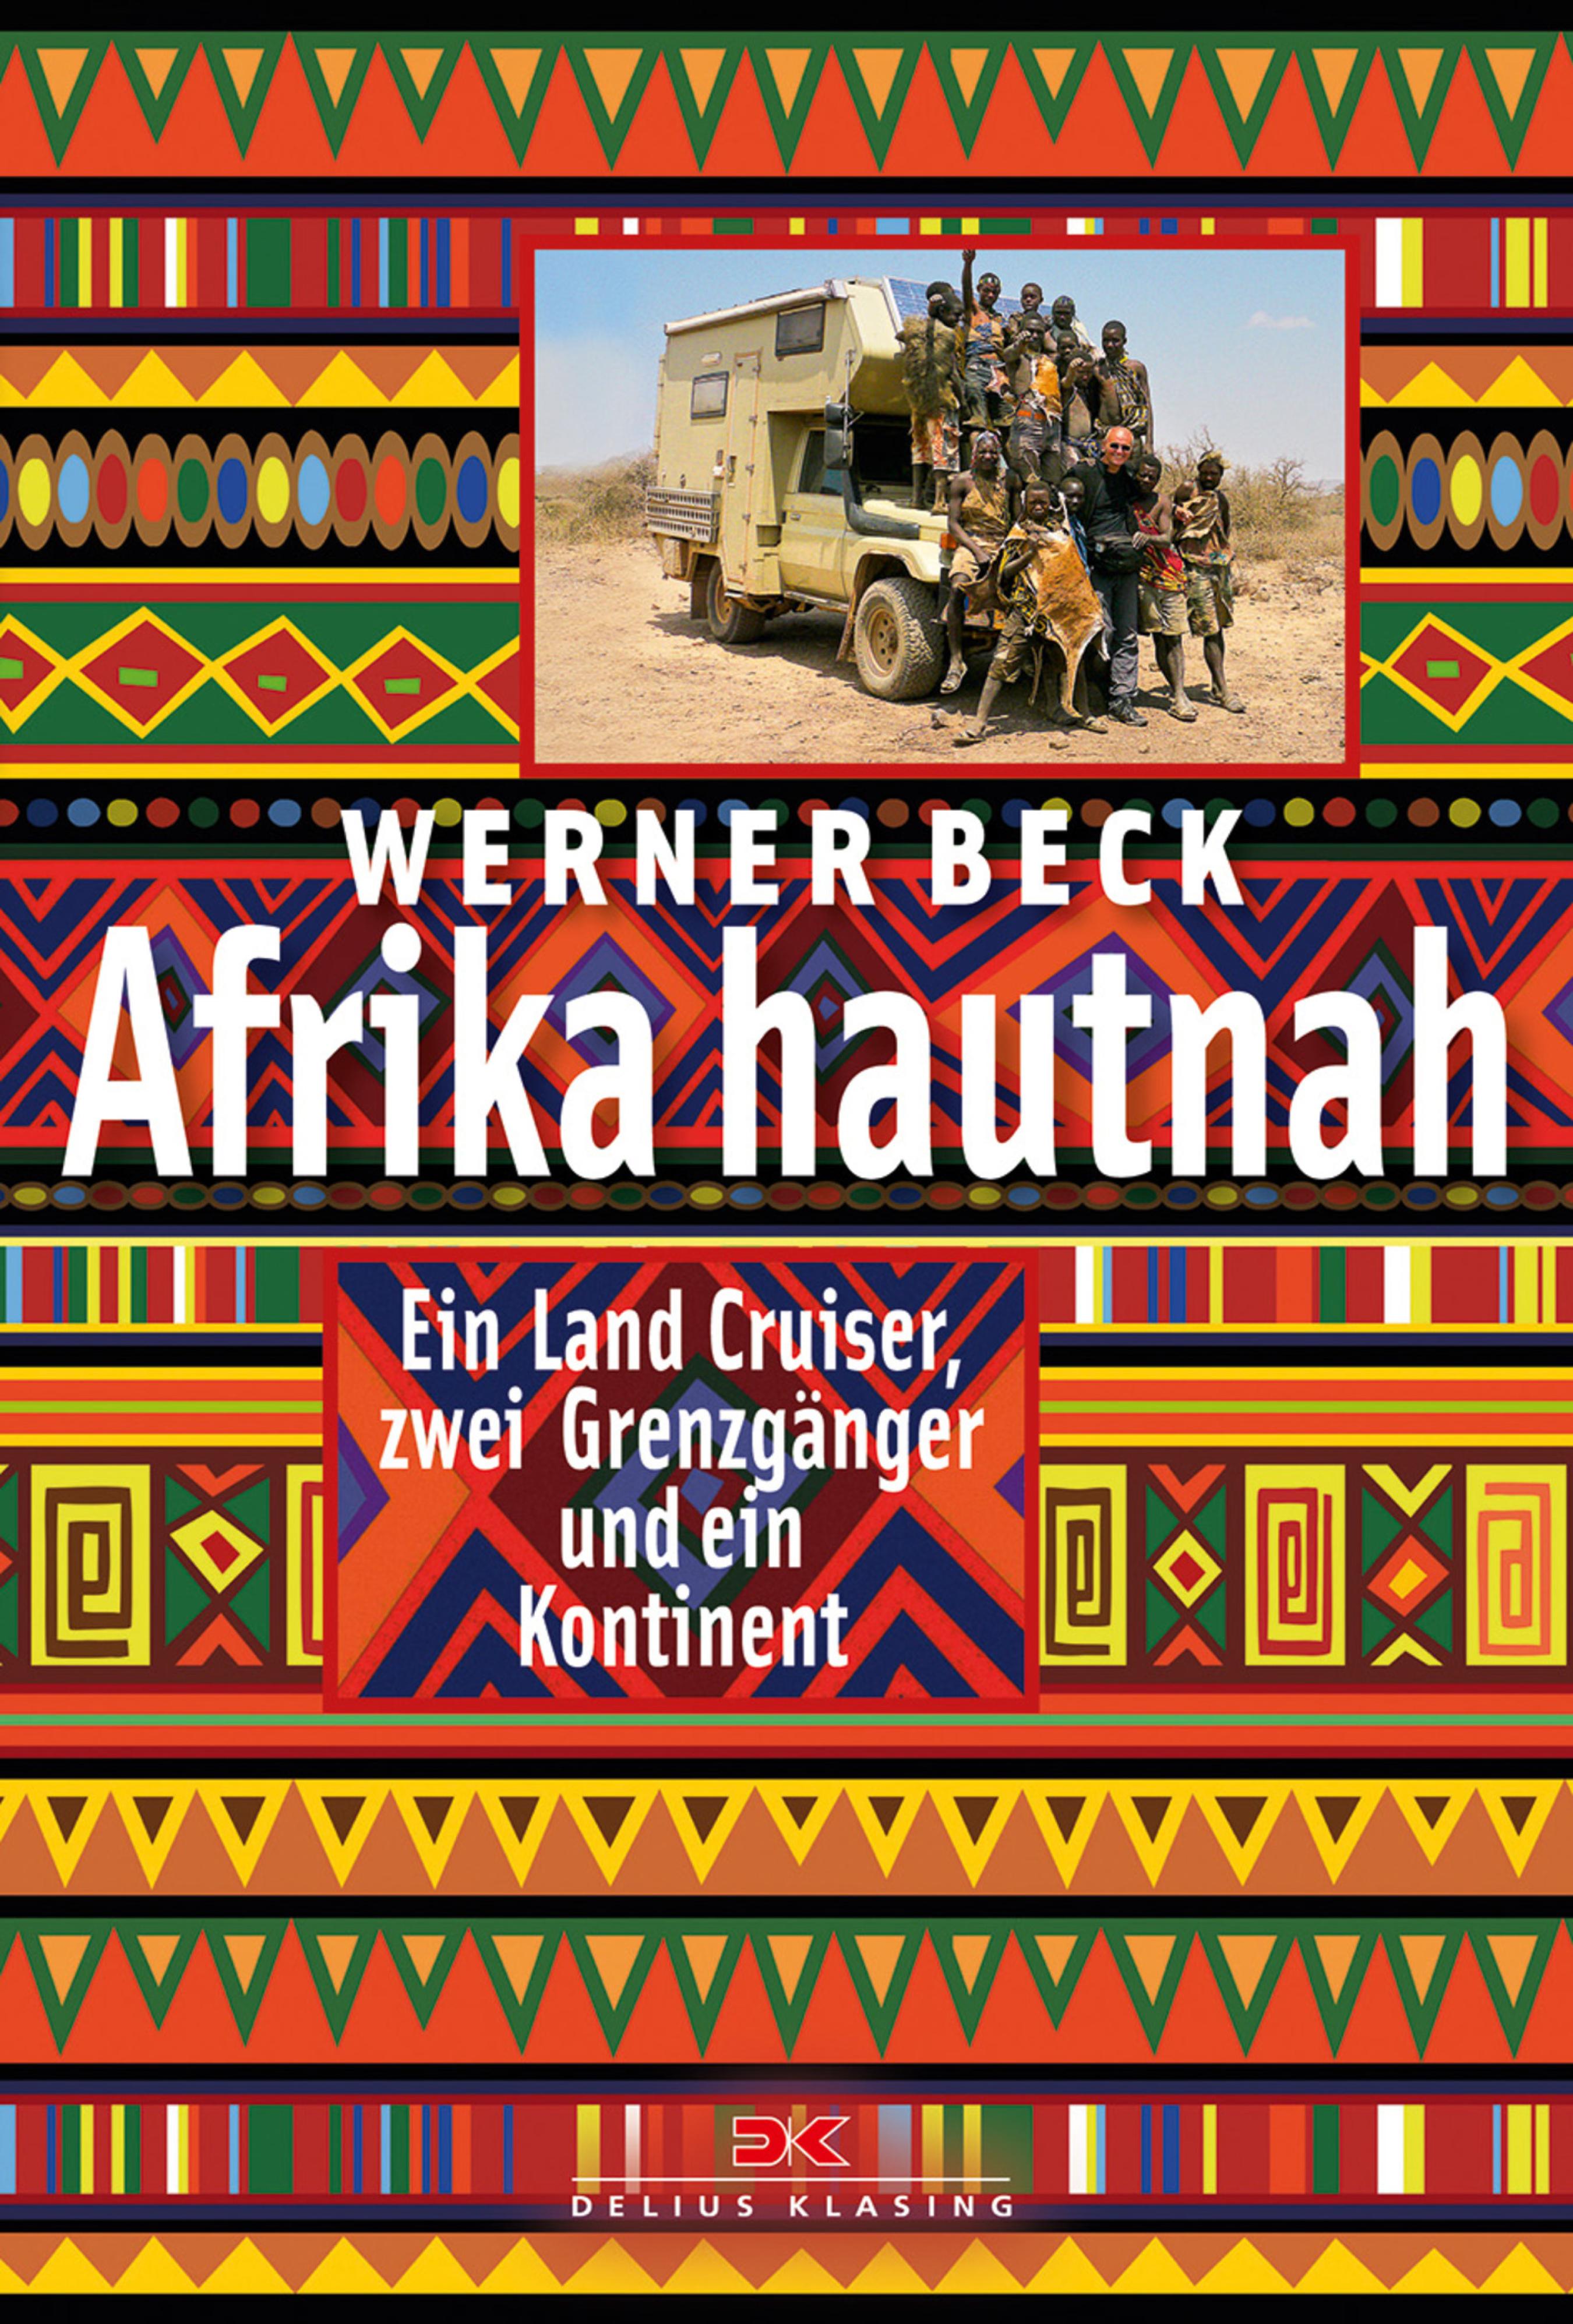 Werner Beck Afrika hautnah